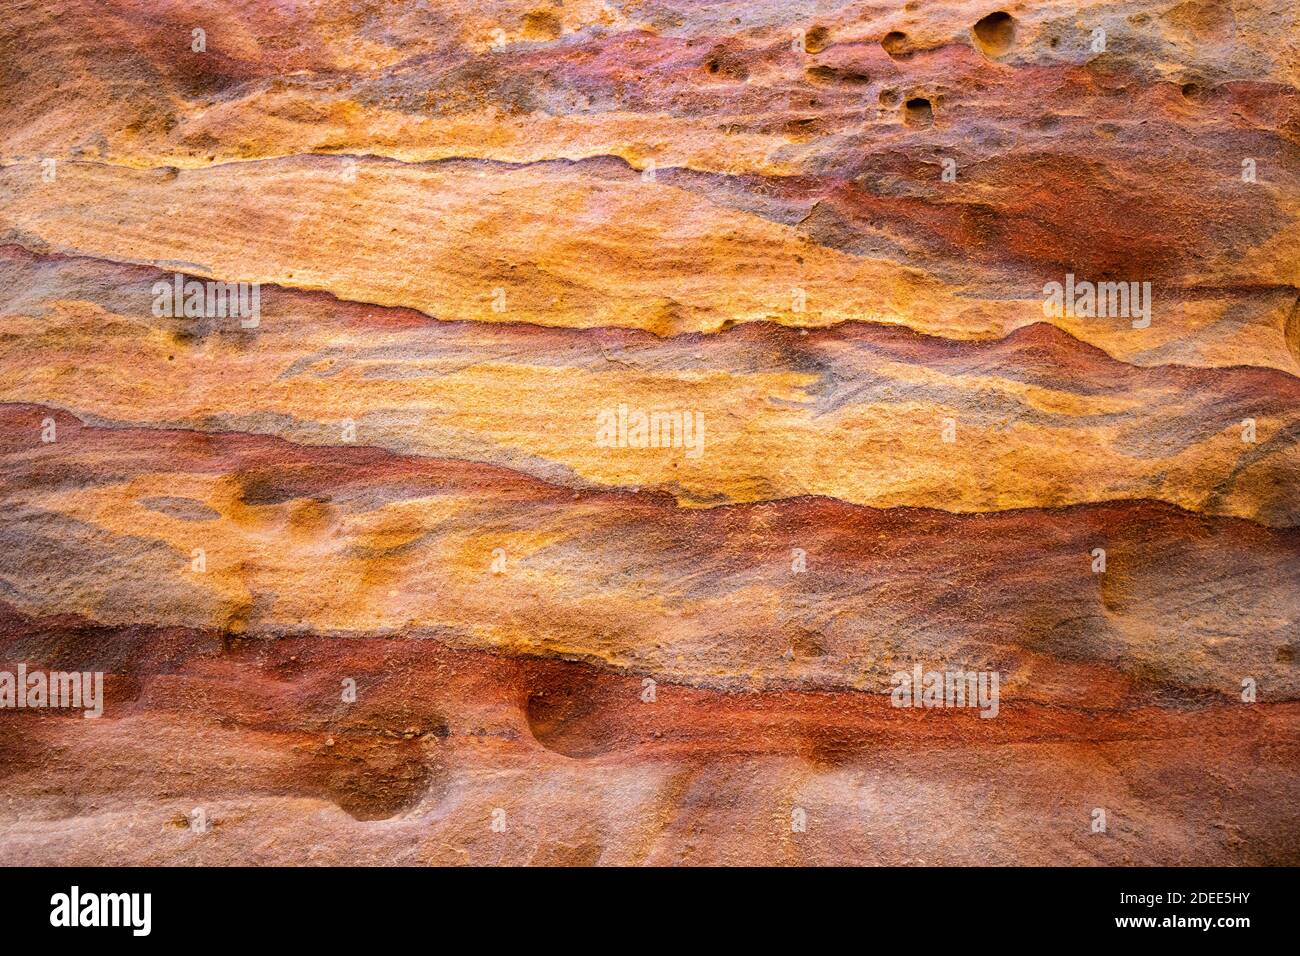 La roche de grès exposée multicolore et les couches minérales dans les tombes anciennes de Petra, Jordan.grès modèle, texture géologique à Petra, Jordanie Banque D'Images